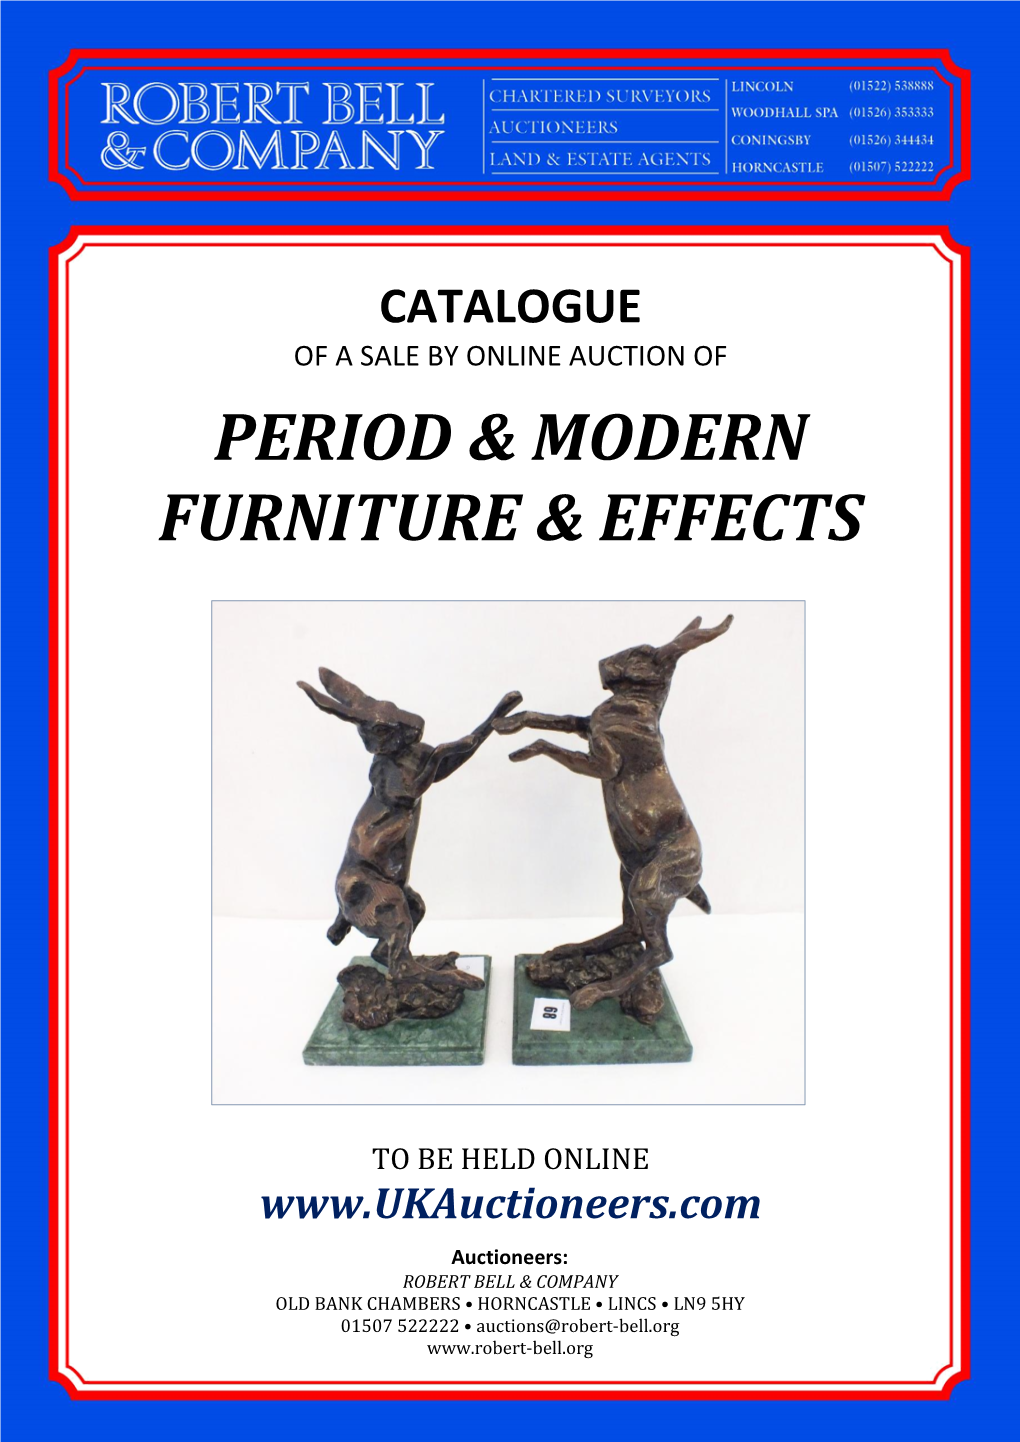 Period & Modern Furniture & Effects